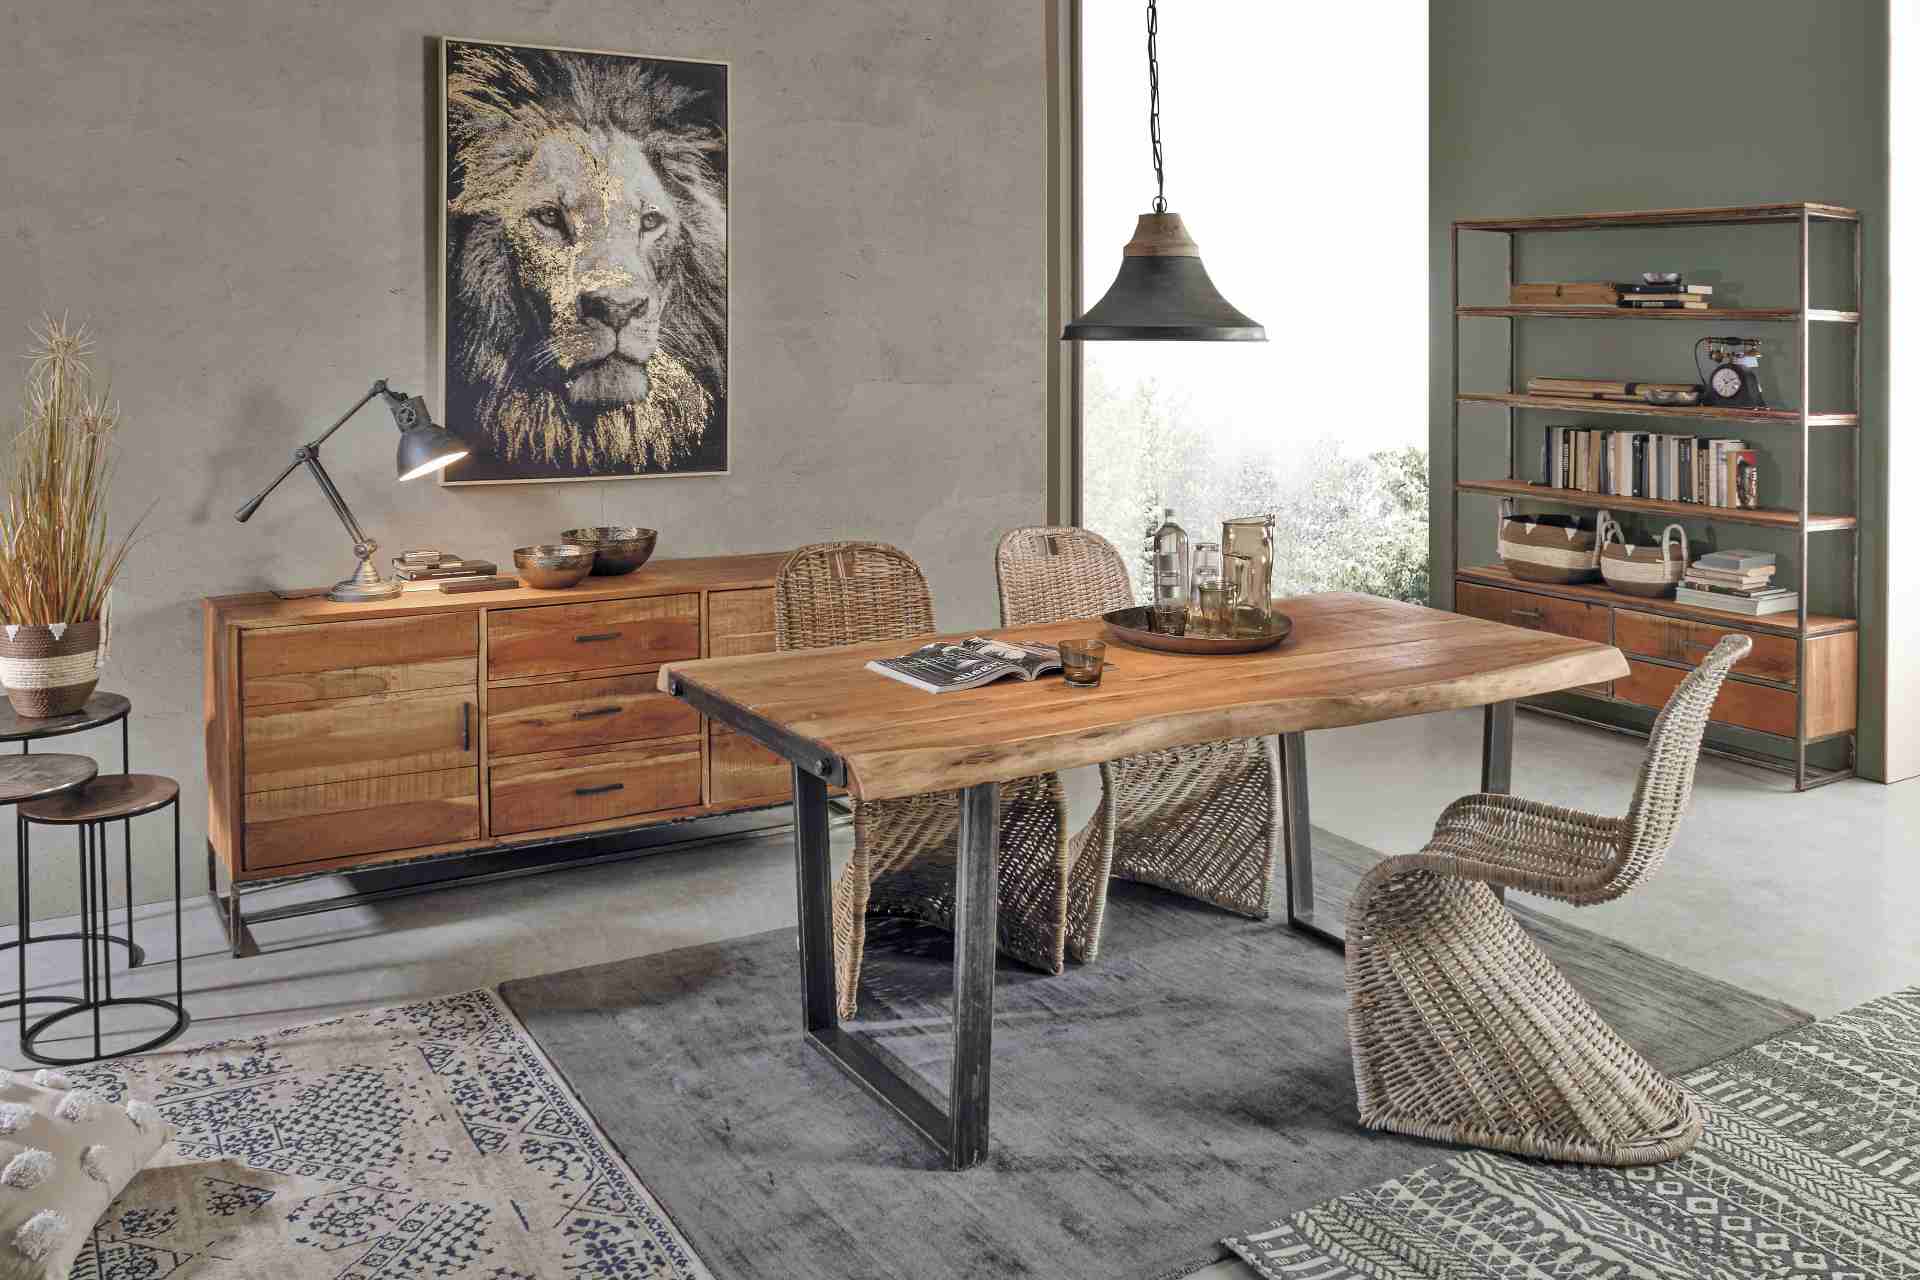 Der Esstisch Elmer überzeugt mit seinem moderndem Design. Gefertigt wurde er aus Akazienholz, welches einen natürlichen Farbton besitzt. Das Gestell des Tisches ist aus Metall und ist in eine schwarze Farbe. Der Tisch besitzt eine Breite von 180 cm.